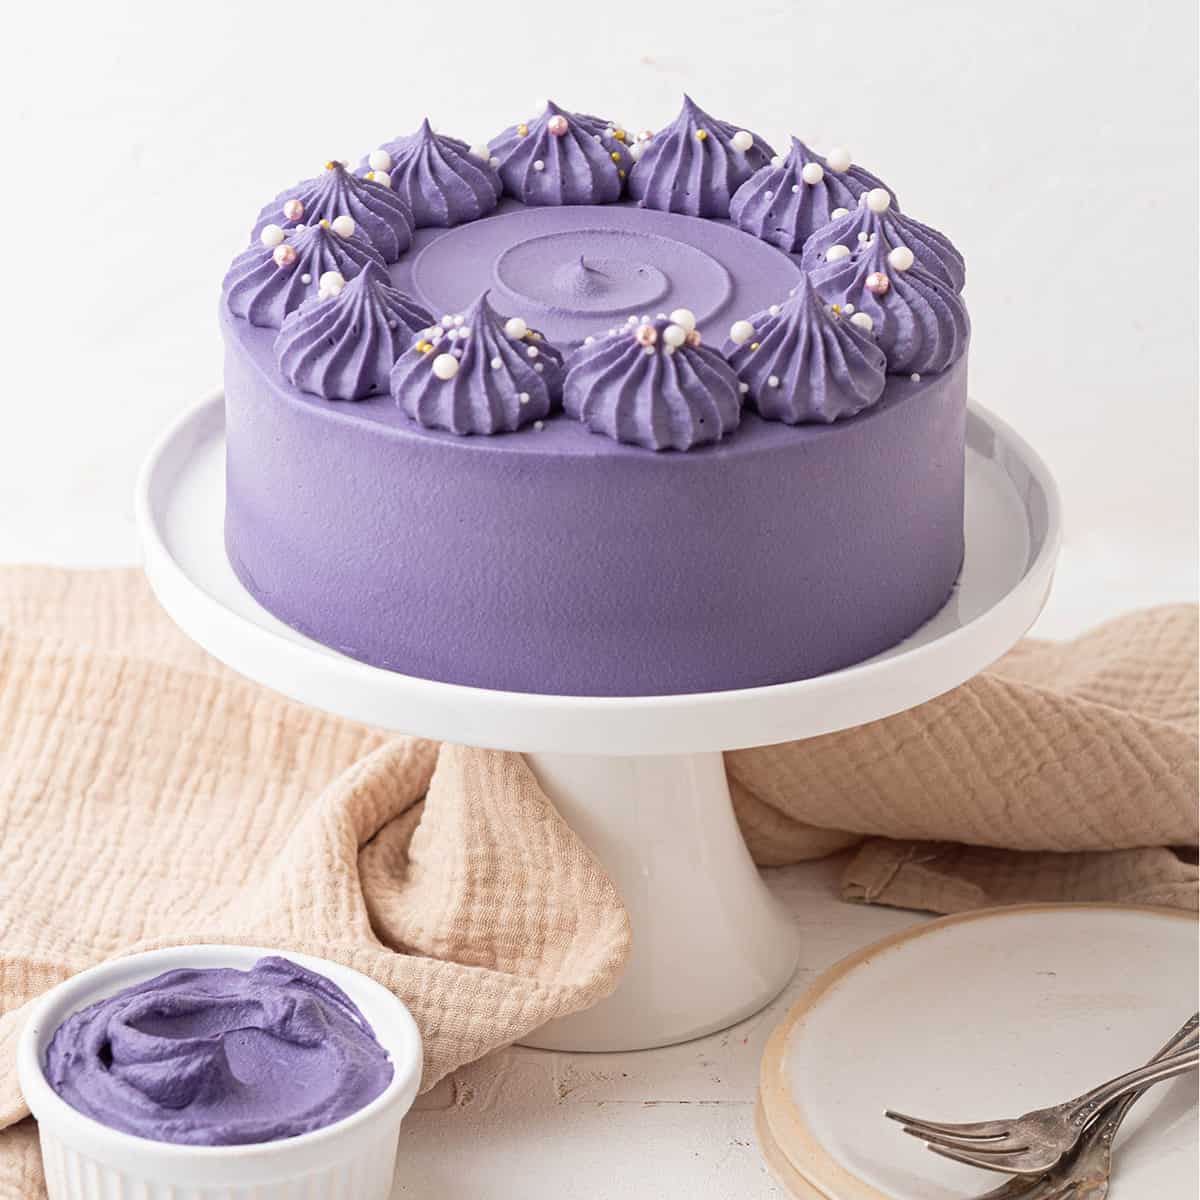 Ube Cake (Filipino Purple Yam Cake) - The Unlikely Baker®